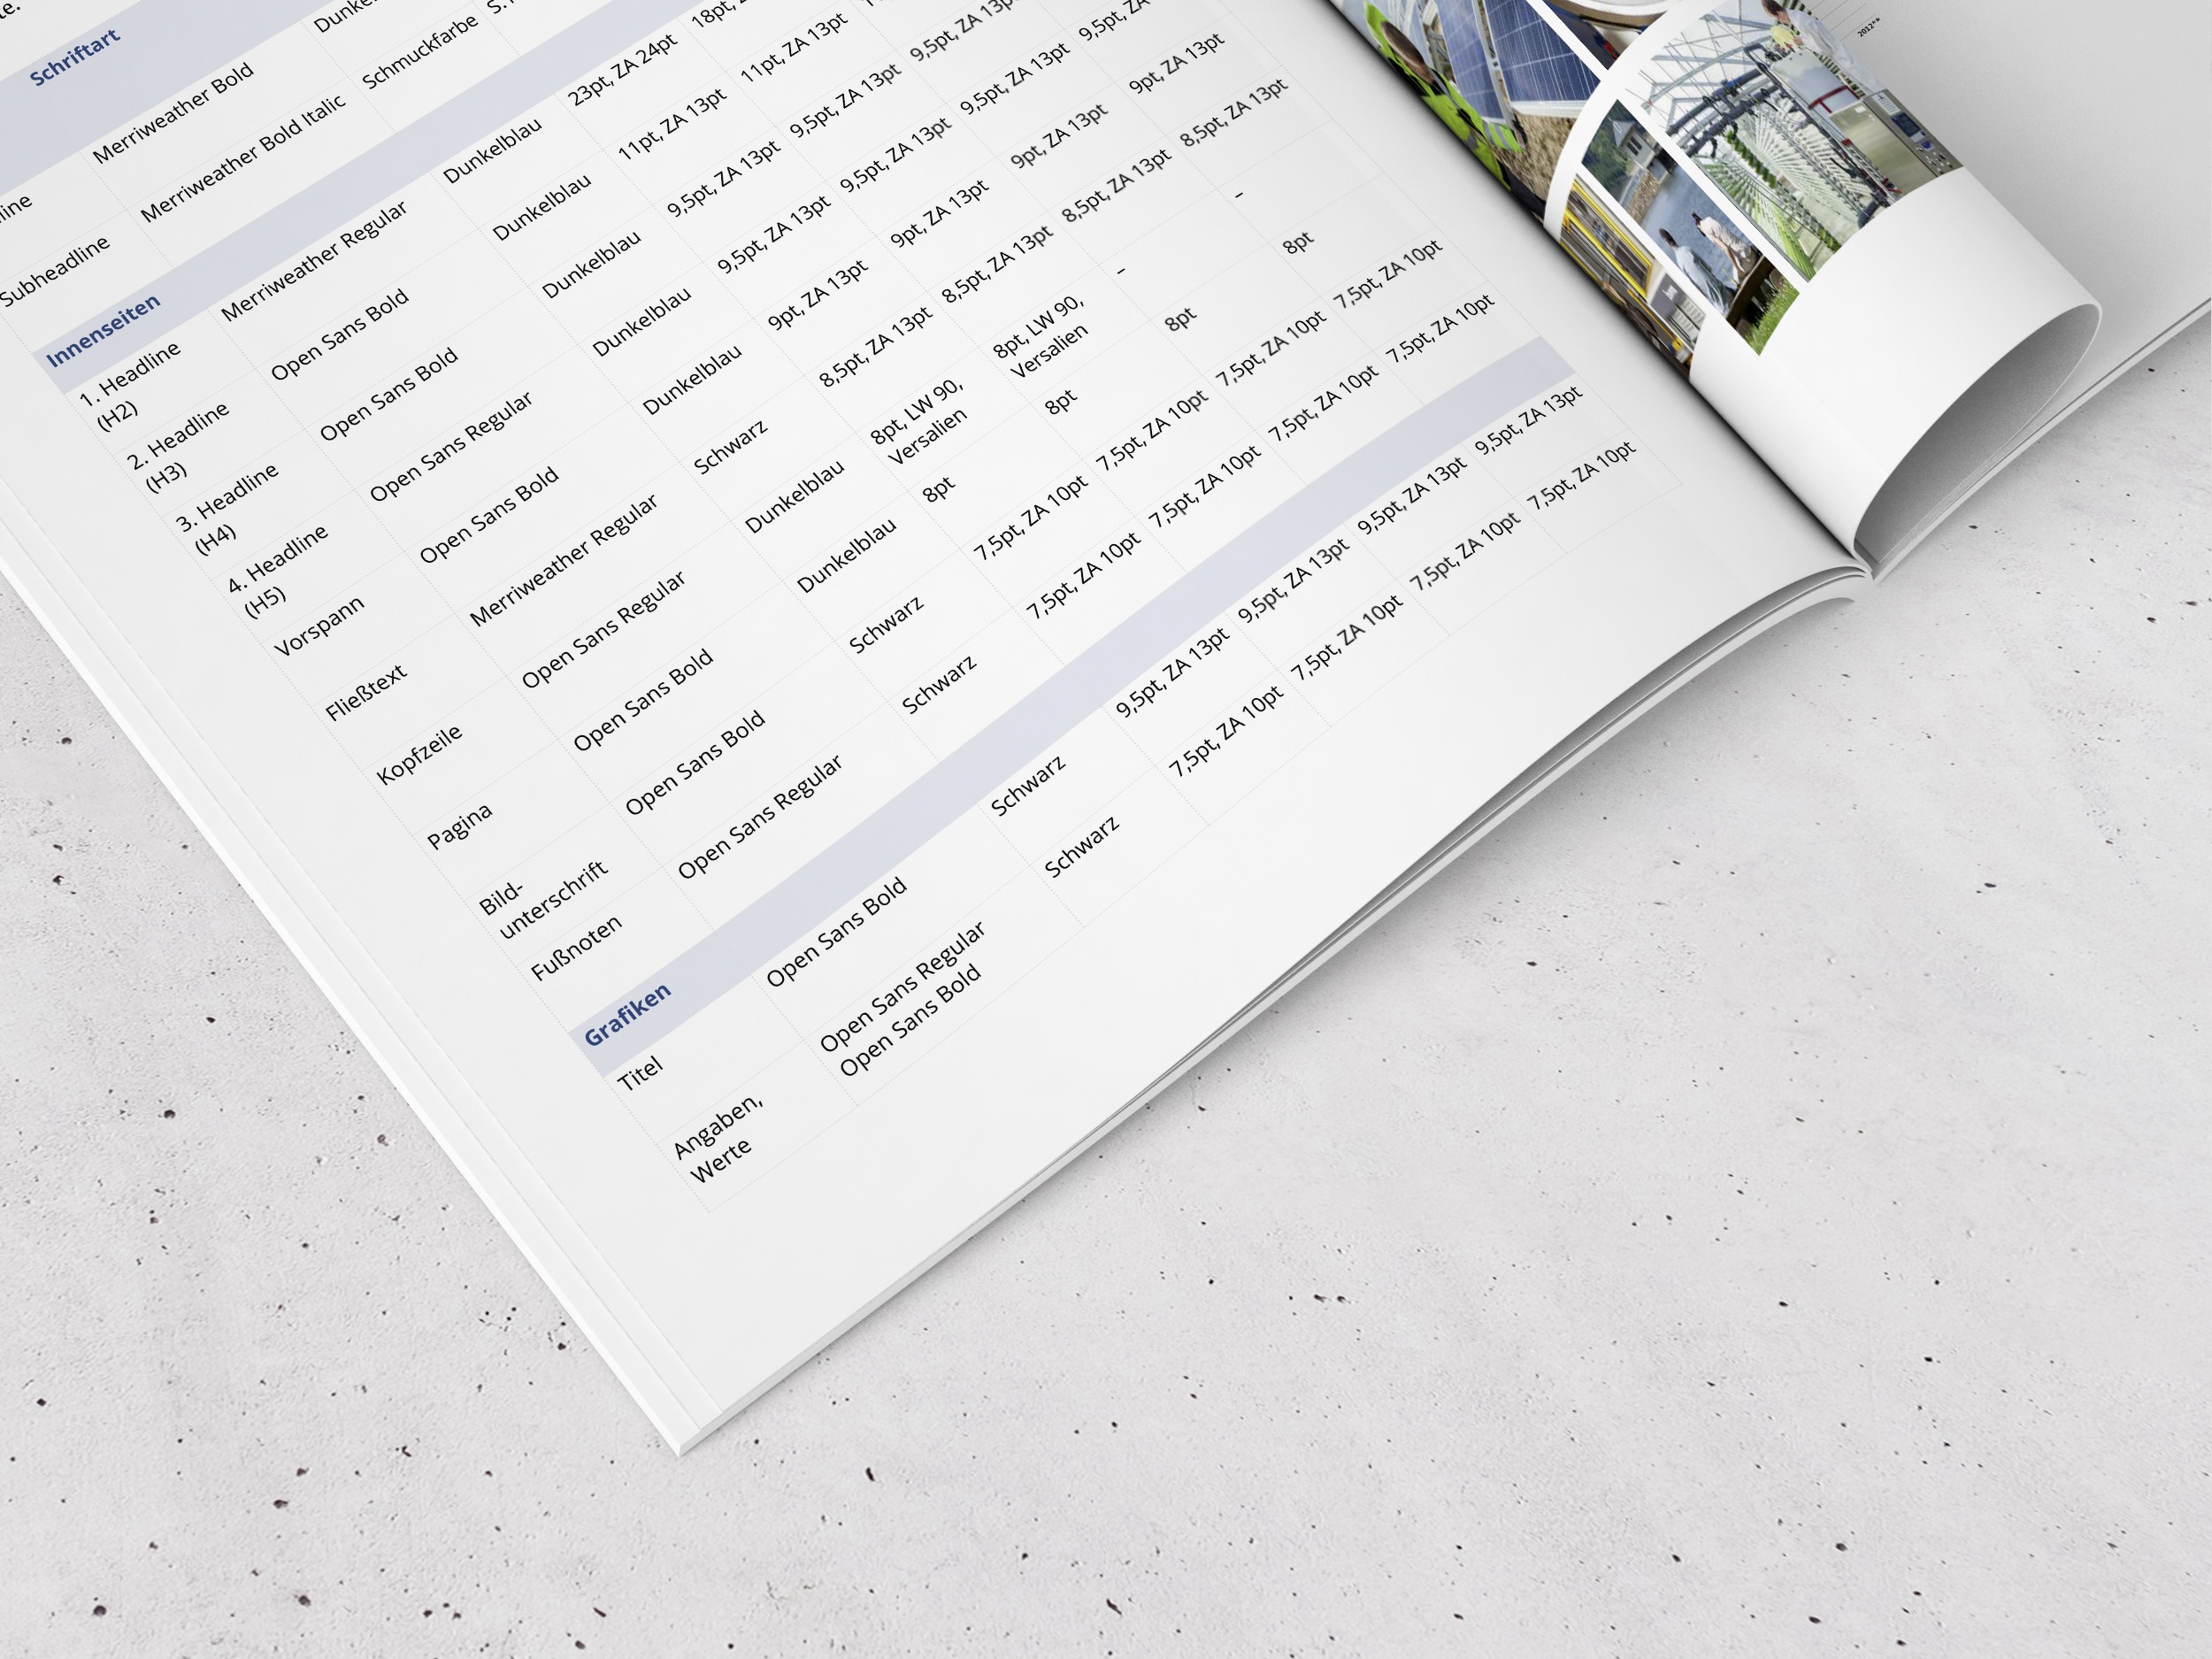 BMWi – CD-Manual Energiepartnerschaften | Editorial Design, Corporate Design